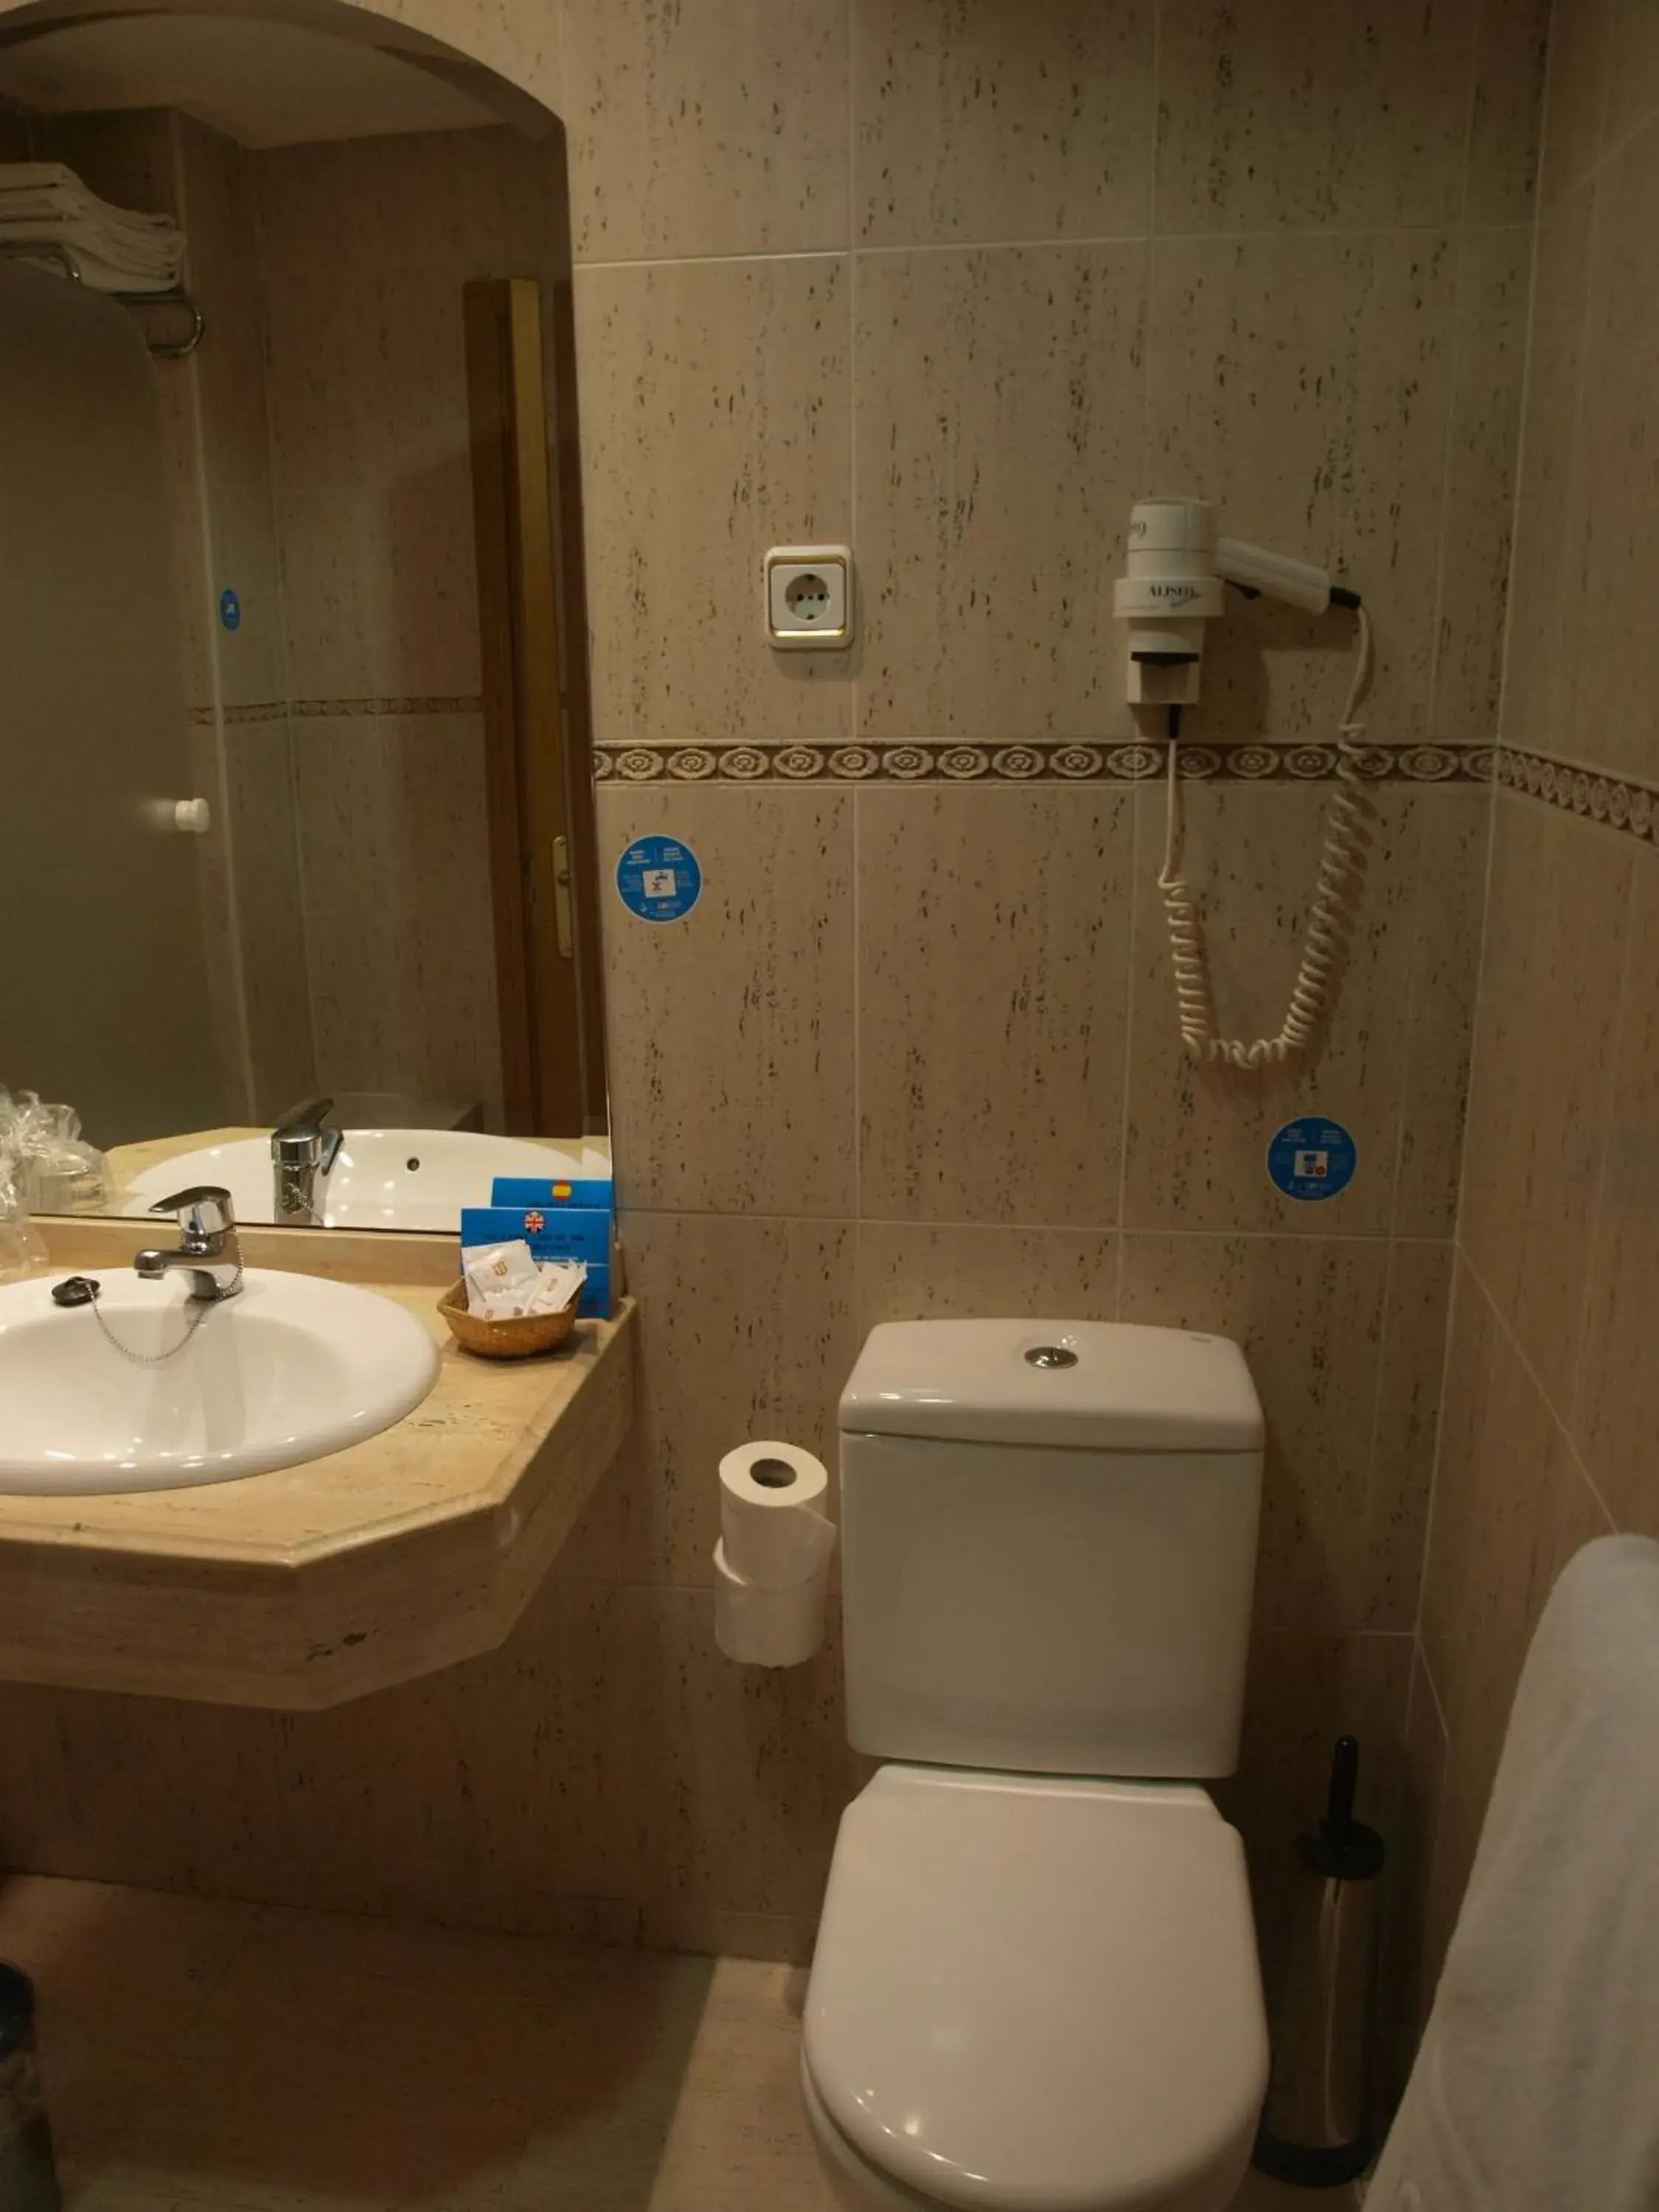 Bathroom in Hotel Don Luis